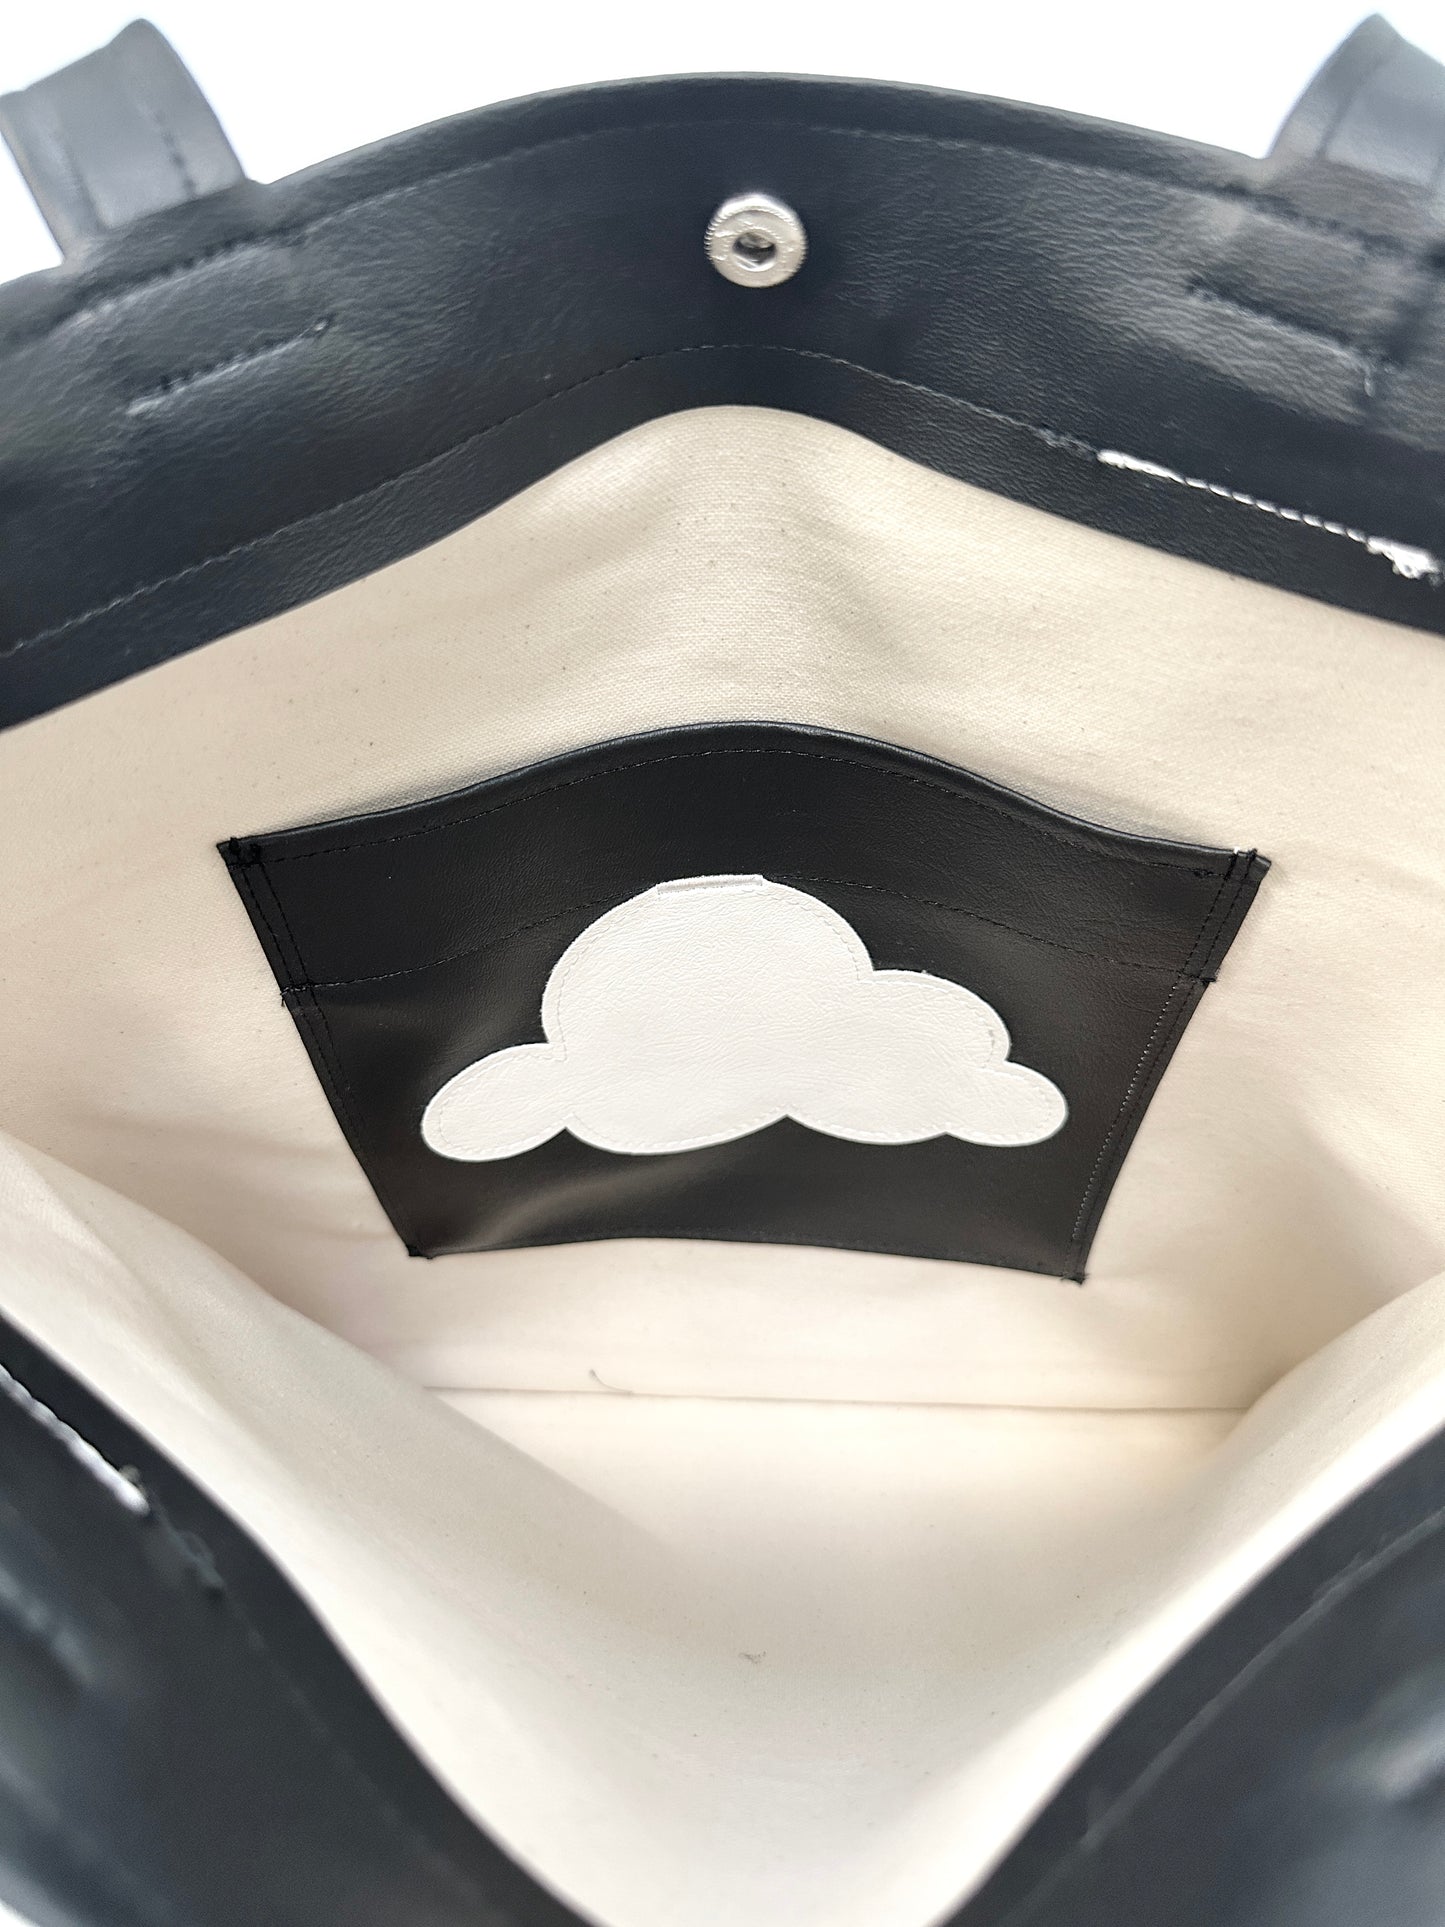 black cloud tote bag